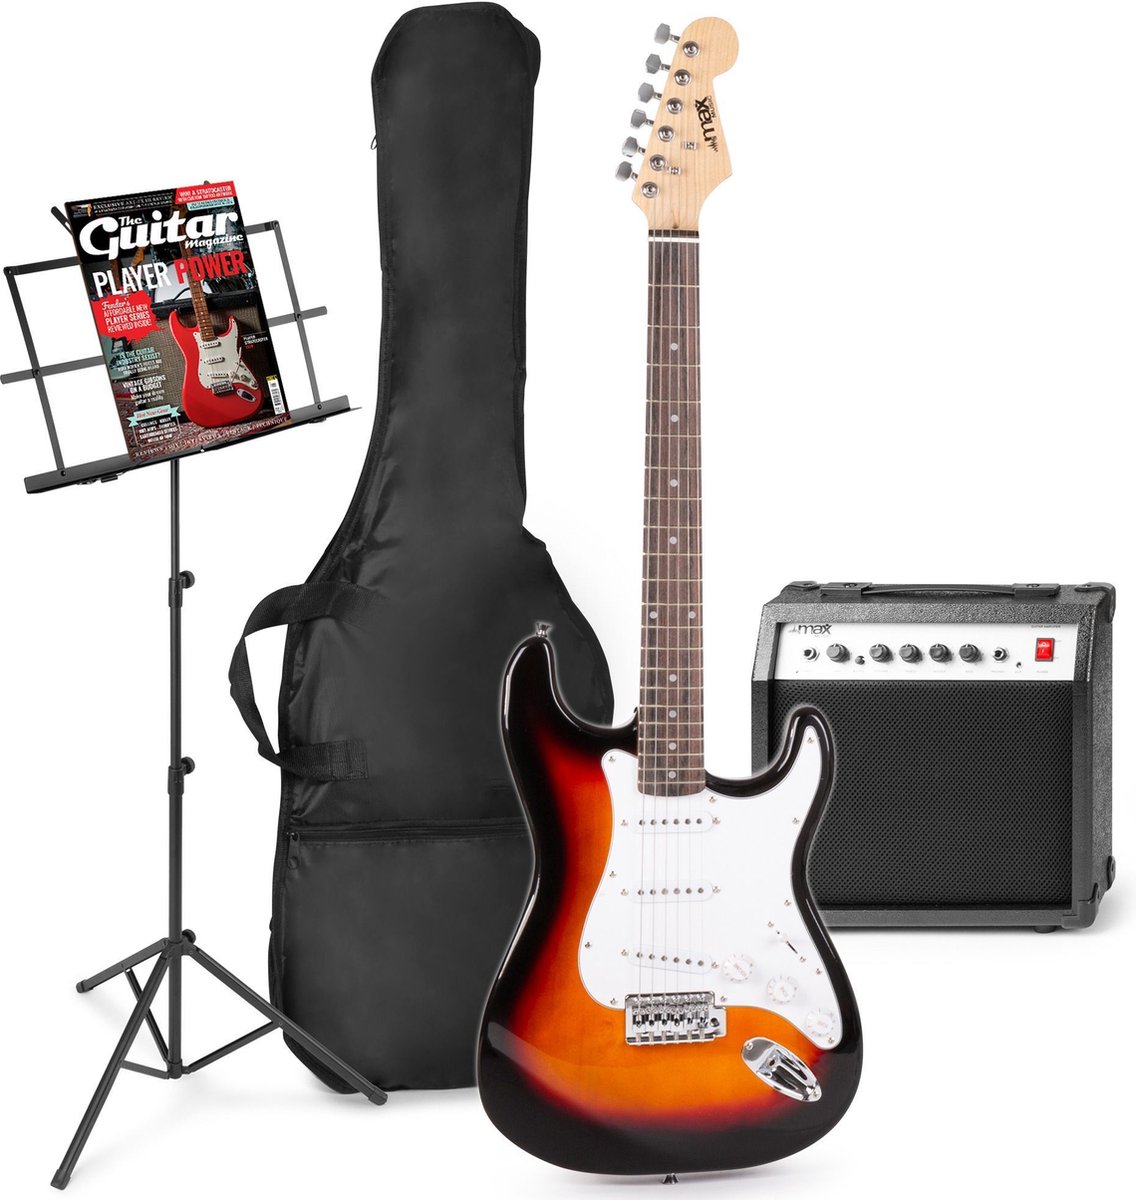 Elektrische gitaar met gitaar versterker - MAX Gigkit - Perfect voor beginners - incl. muziekstandaard, gitaar stemapparaat, gitaartas en plectrum - Sunburst